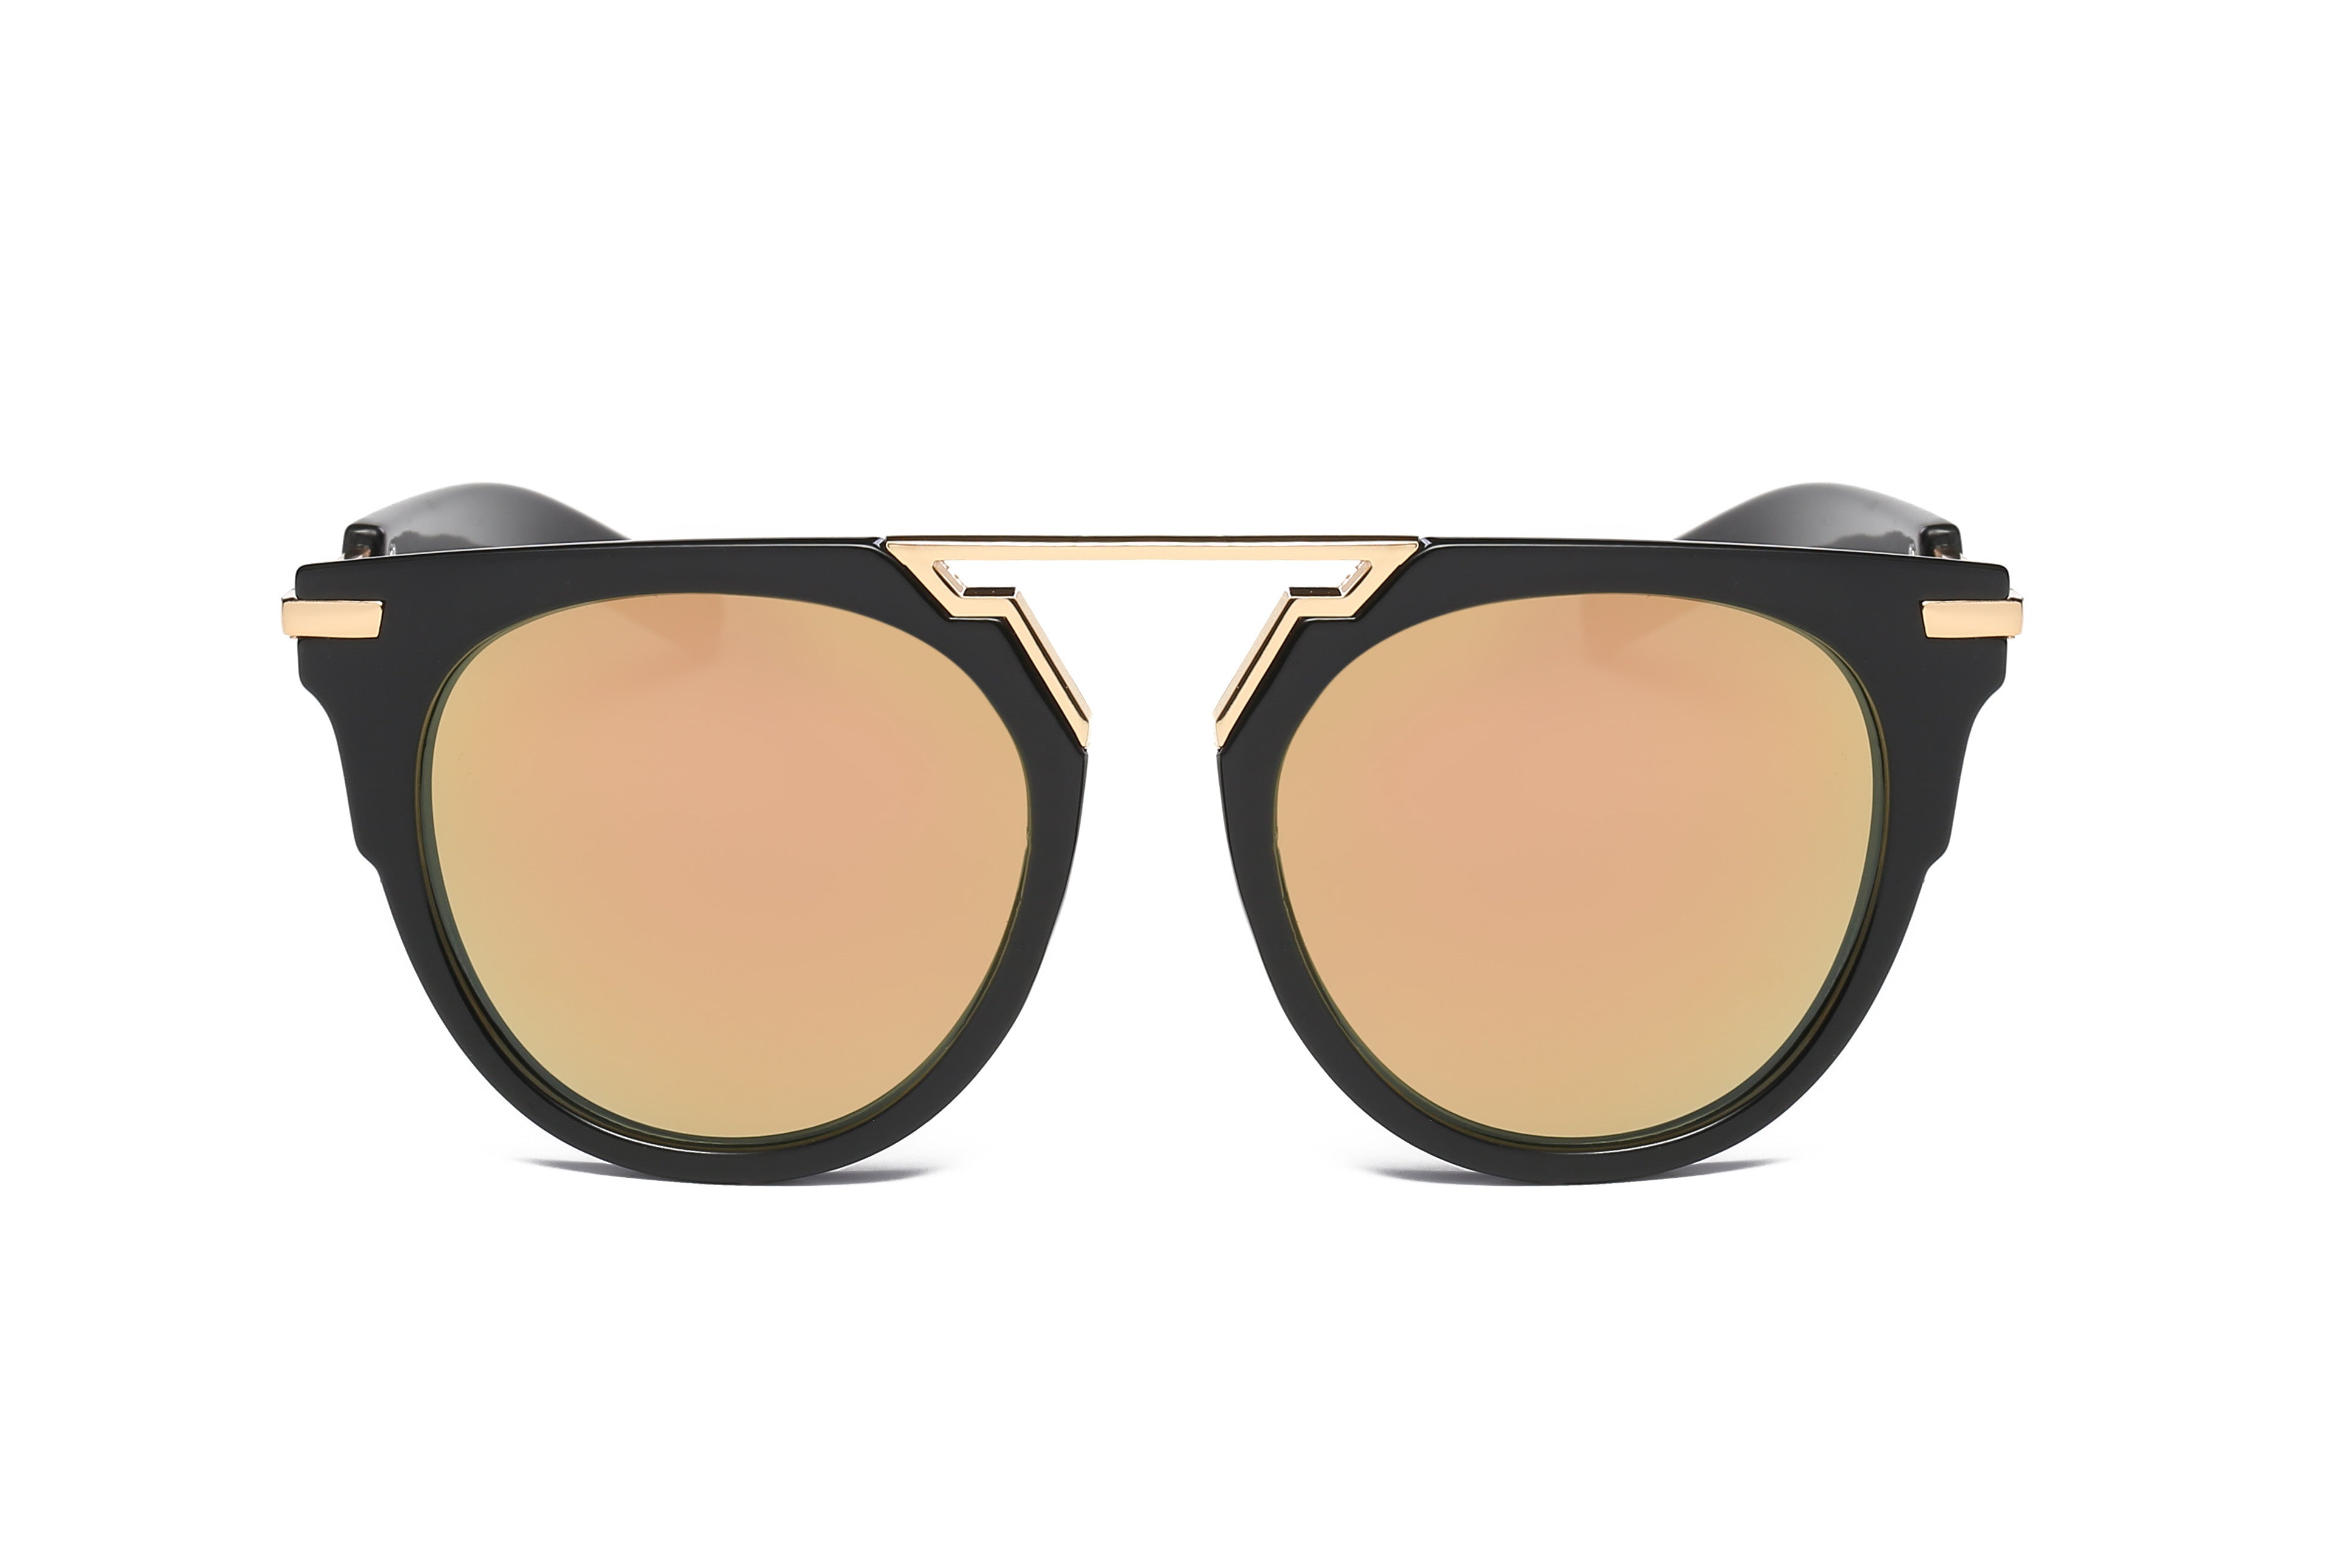 S2004 - Classic Retro Fashion Brow-Bar Round SUNGLASSES Gold- Black Frame Peach Lens